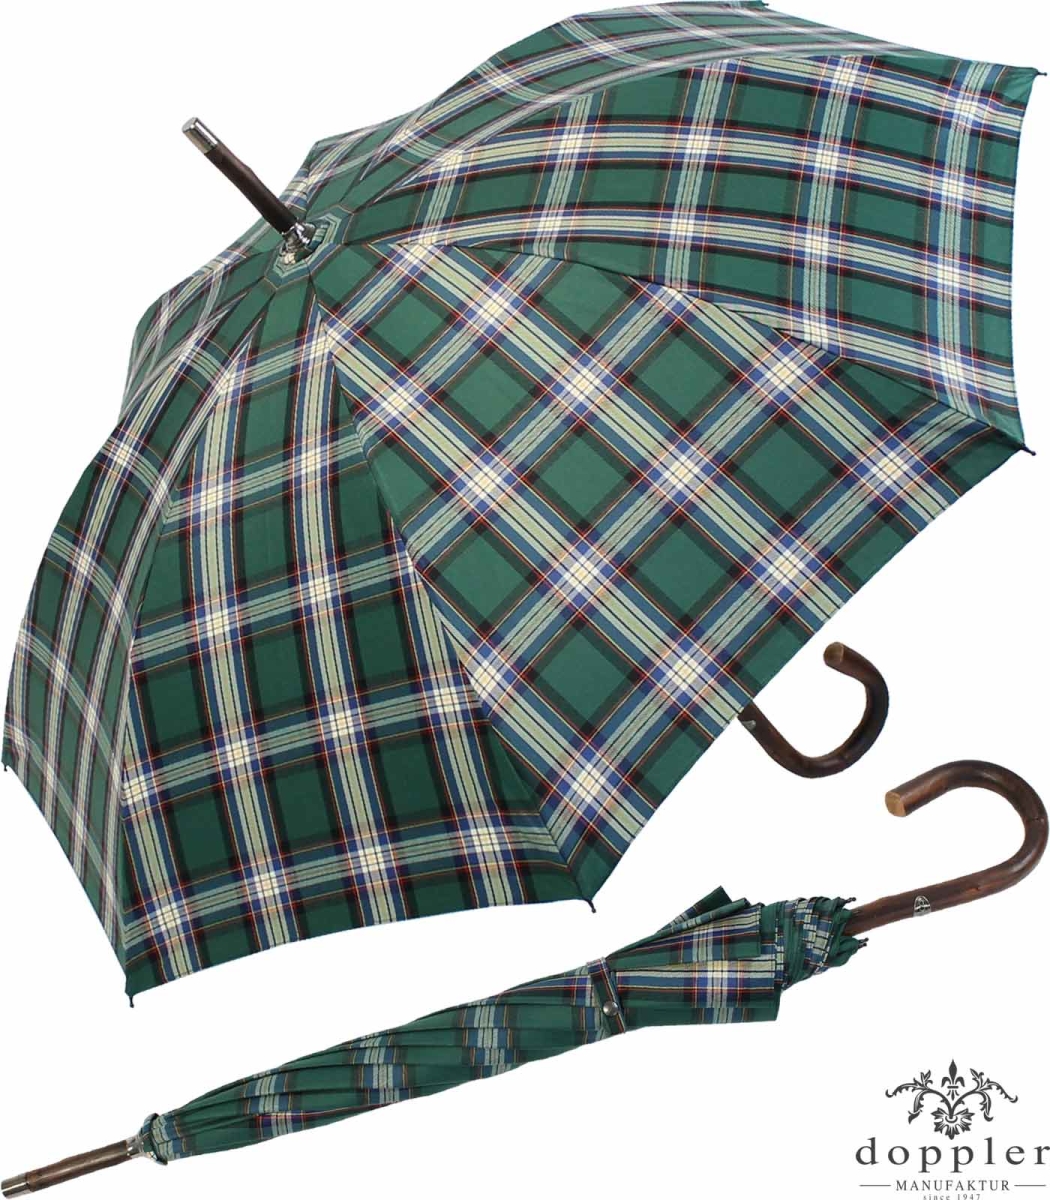 € Stützschirm Doppler Regenschirm Karo 219,00 - weiss, grün Manufaktur Kastanie